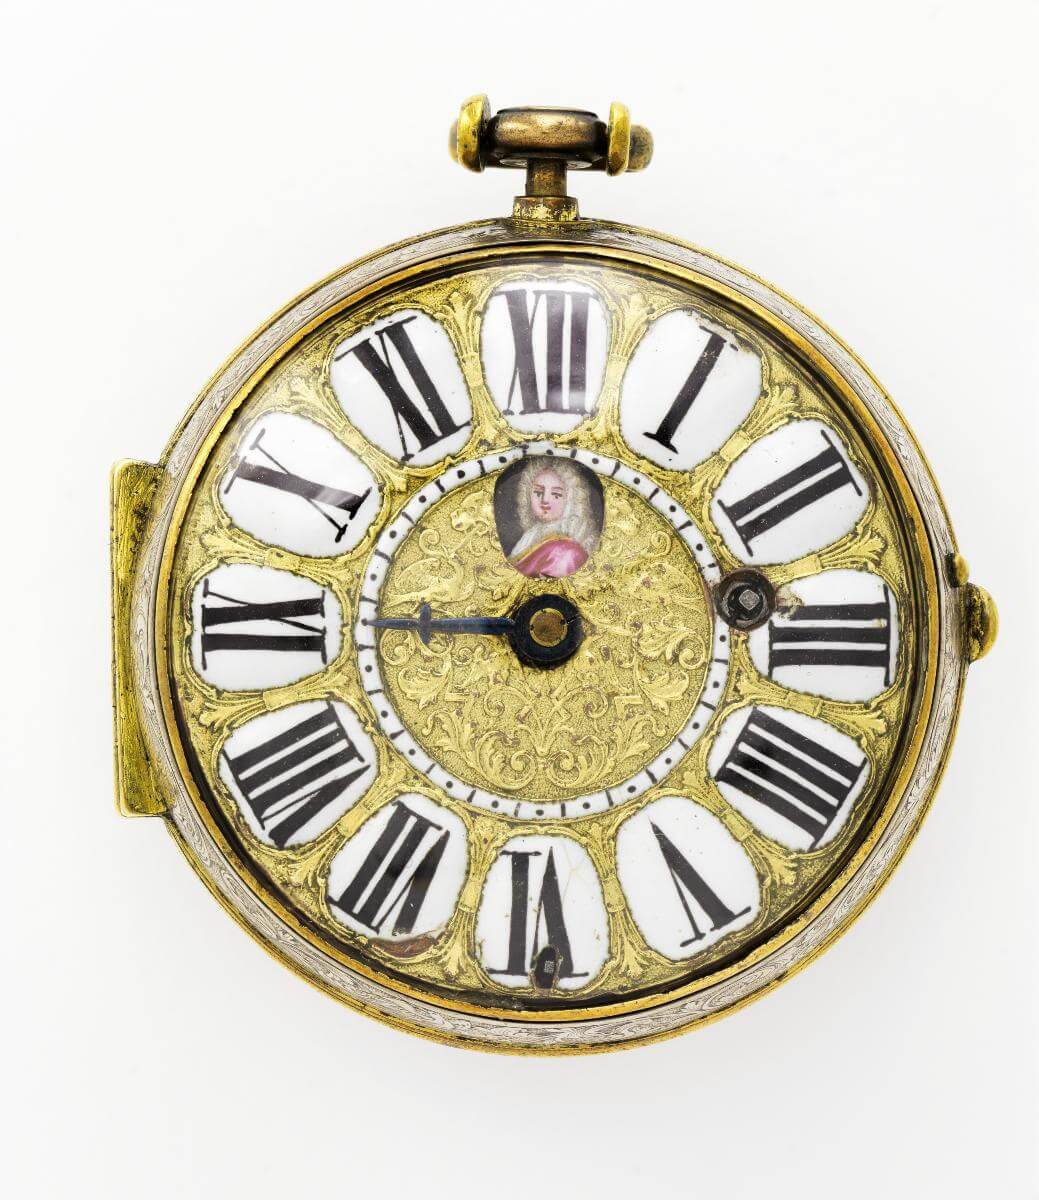 Eine der Taschenuhren aus dem Besitz von Marie von Ebner-Eschenbach, die nicht als Verlust zu beklagen ist: "Oignon" Taschenuhr in Silbergehäuse von Madelainy, Paris, um 1730, Wien Museum 